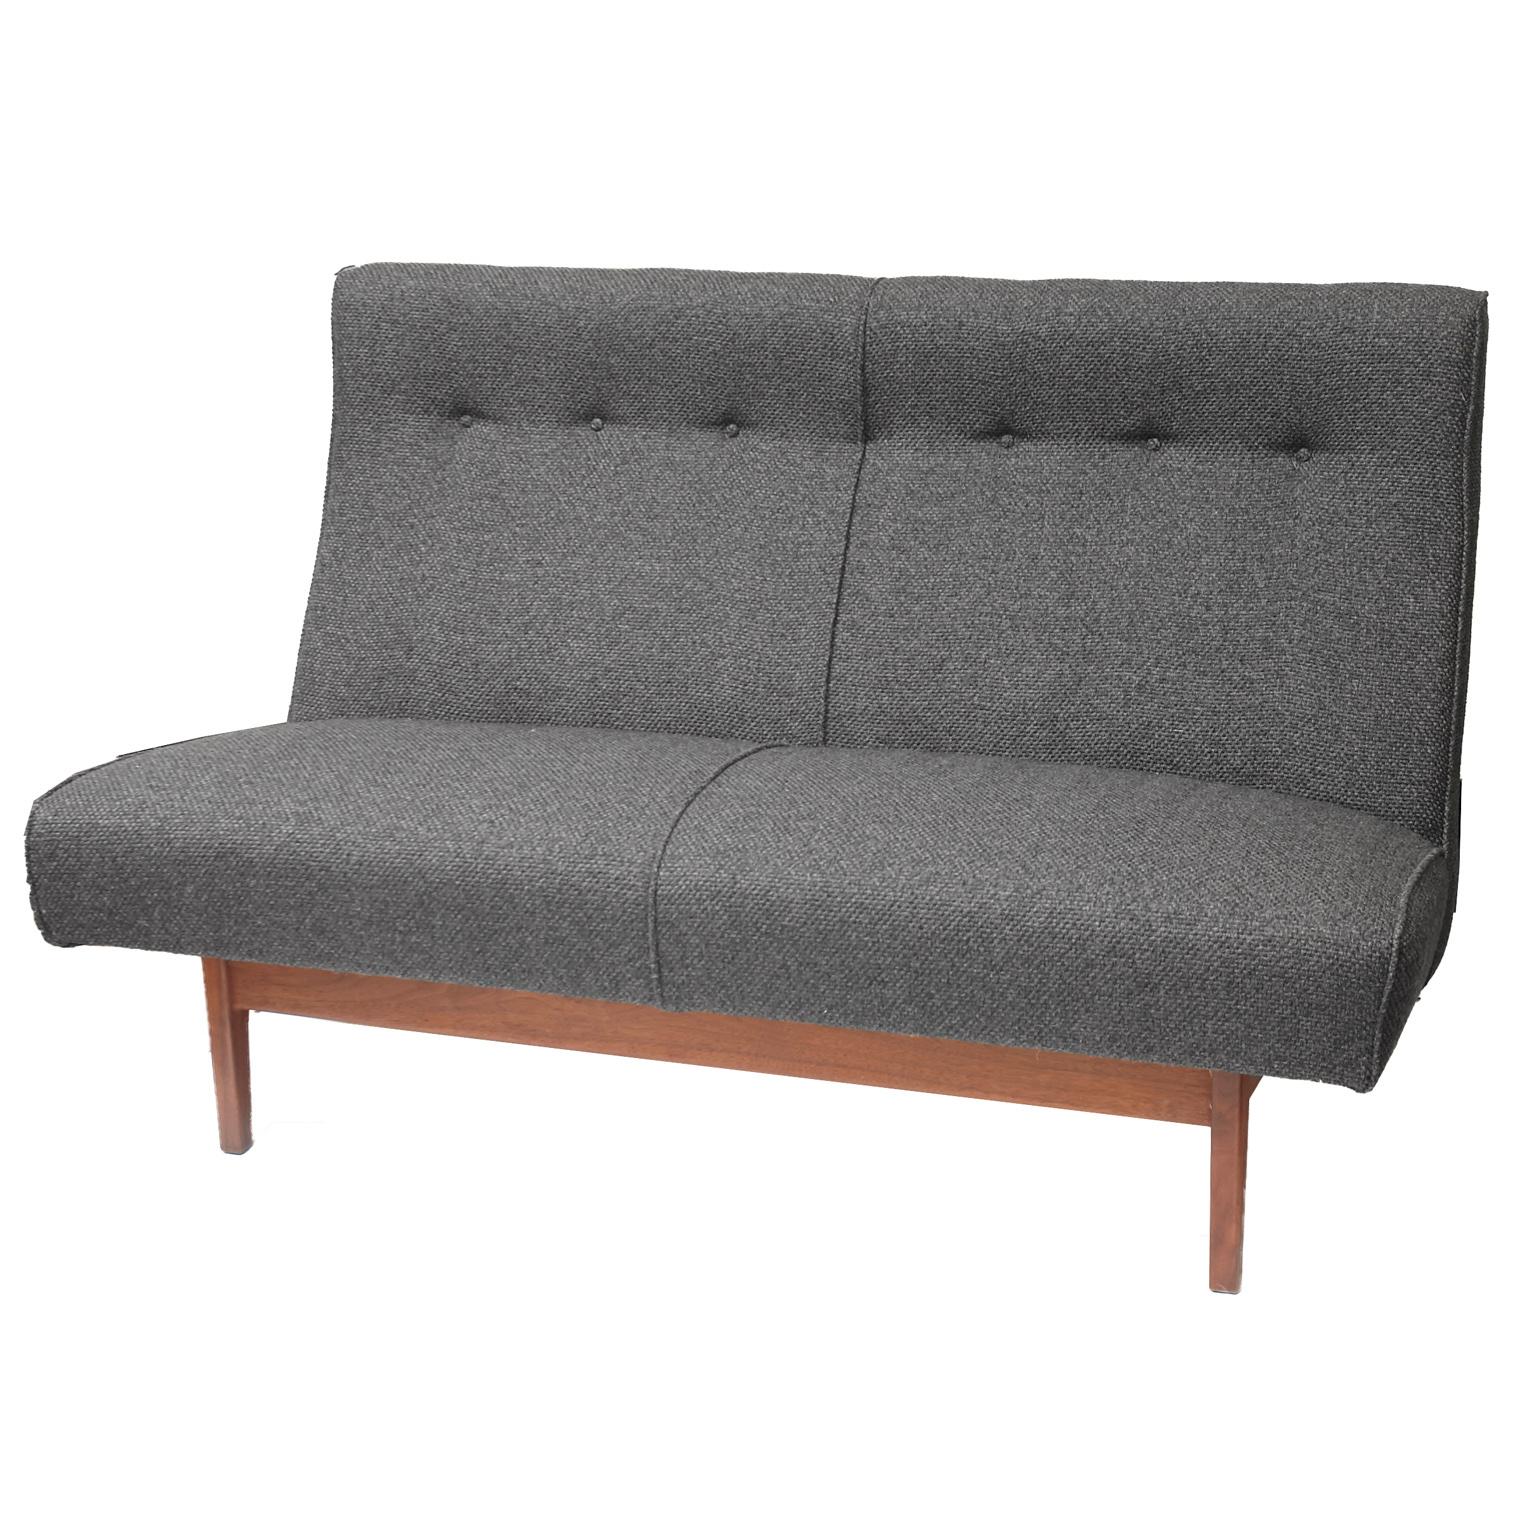 Jens Risom Charcoal Grey Sofa and Matching Love Seat Model U251 2